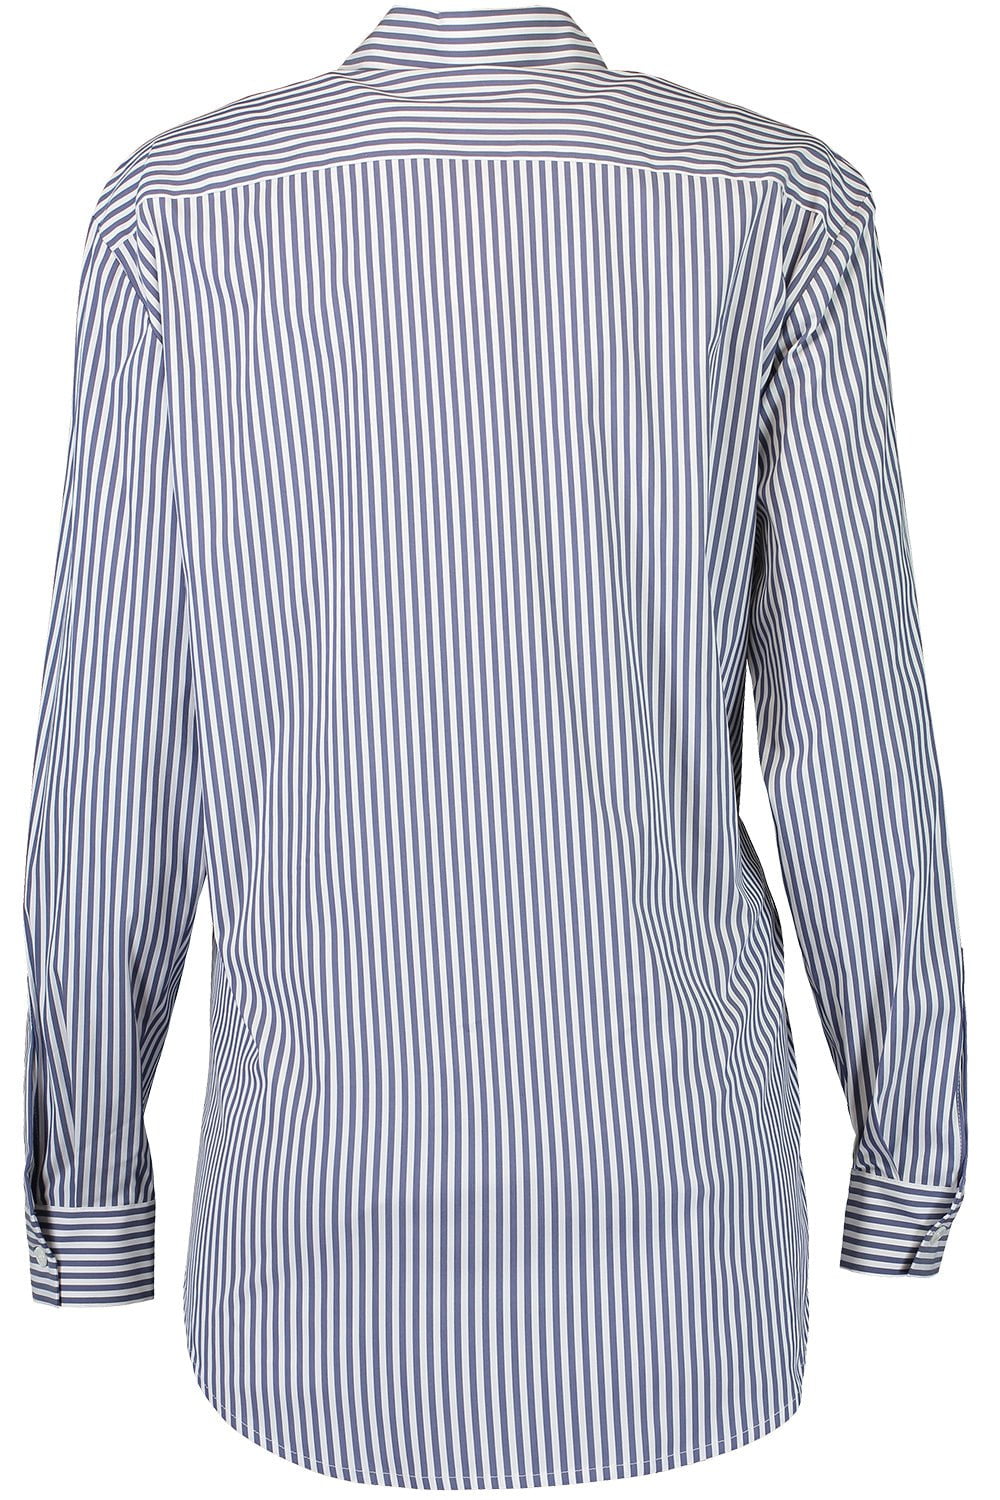 MICHAEL KORS-Side Button Shirt-